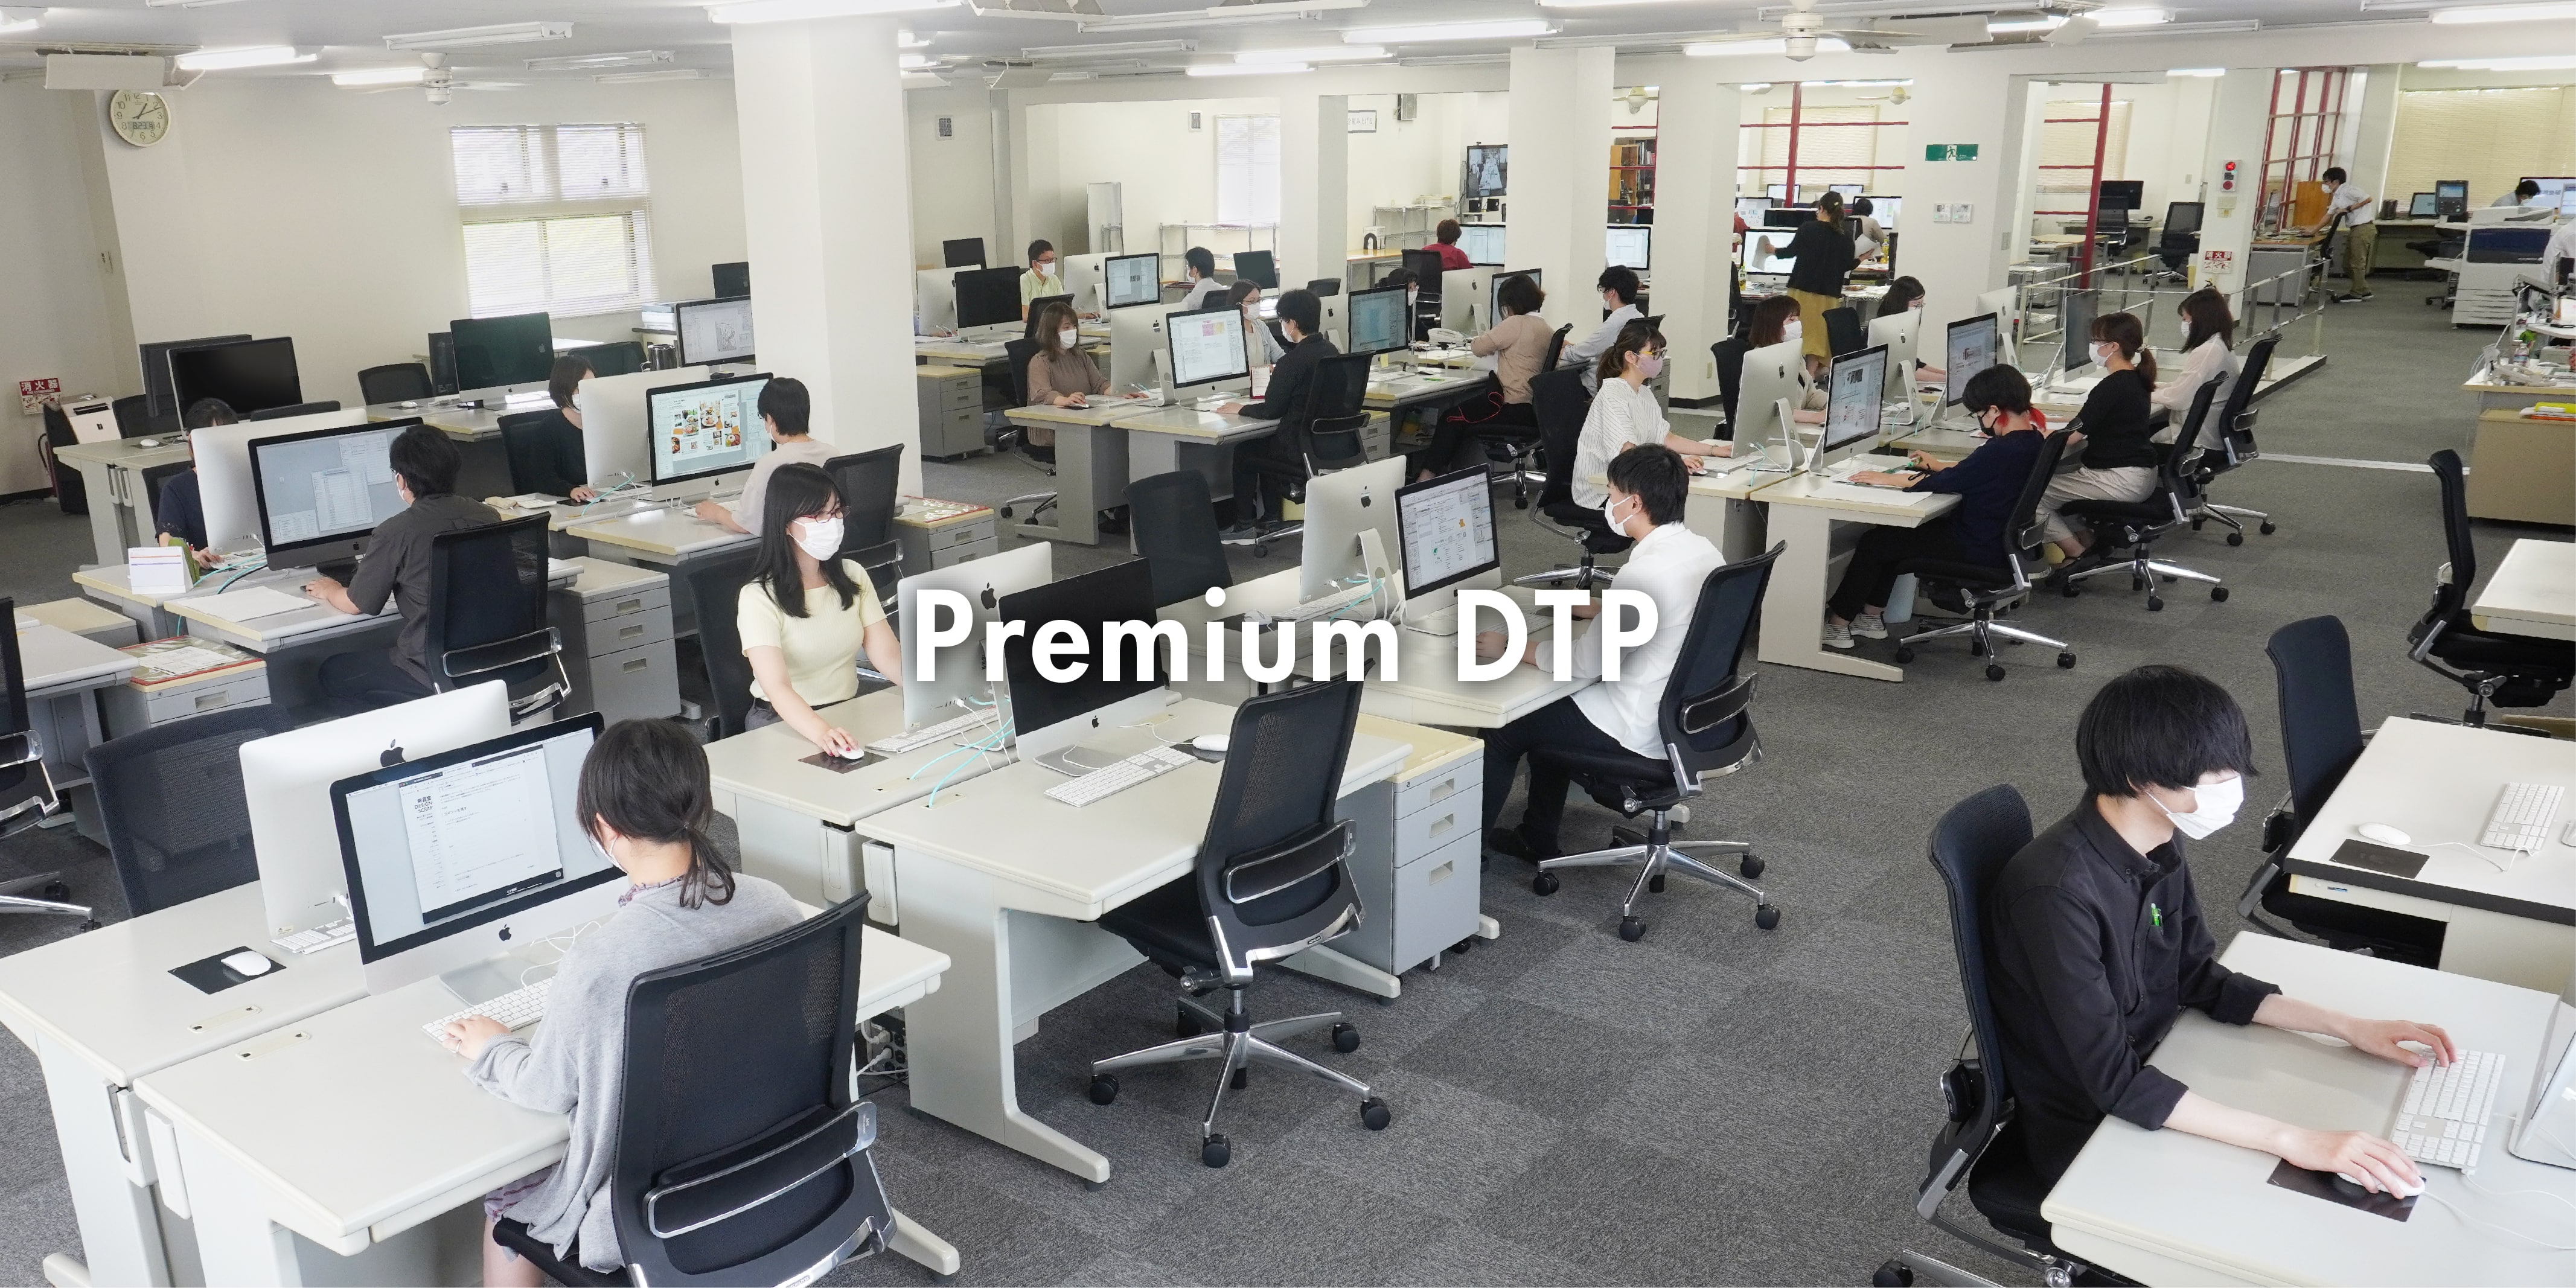 Premium DTP